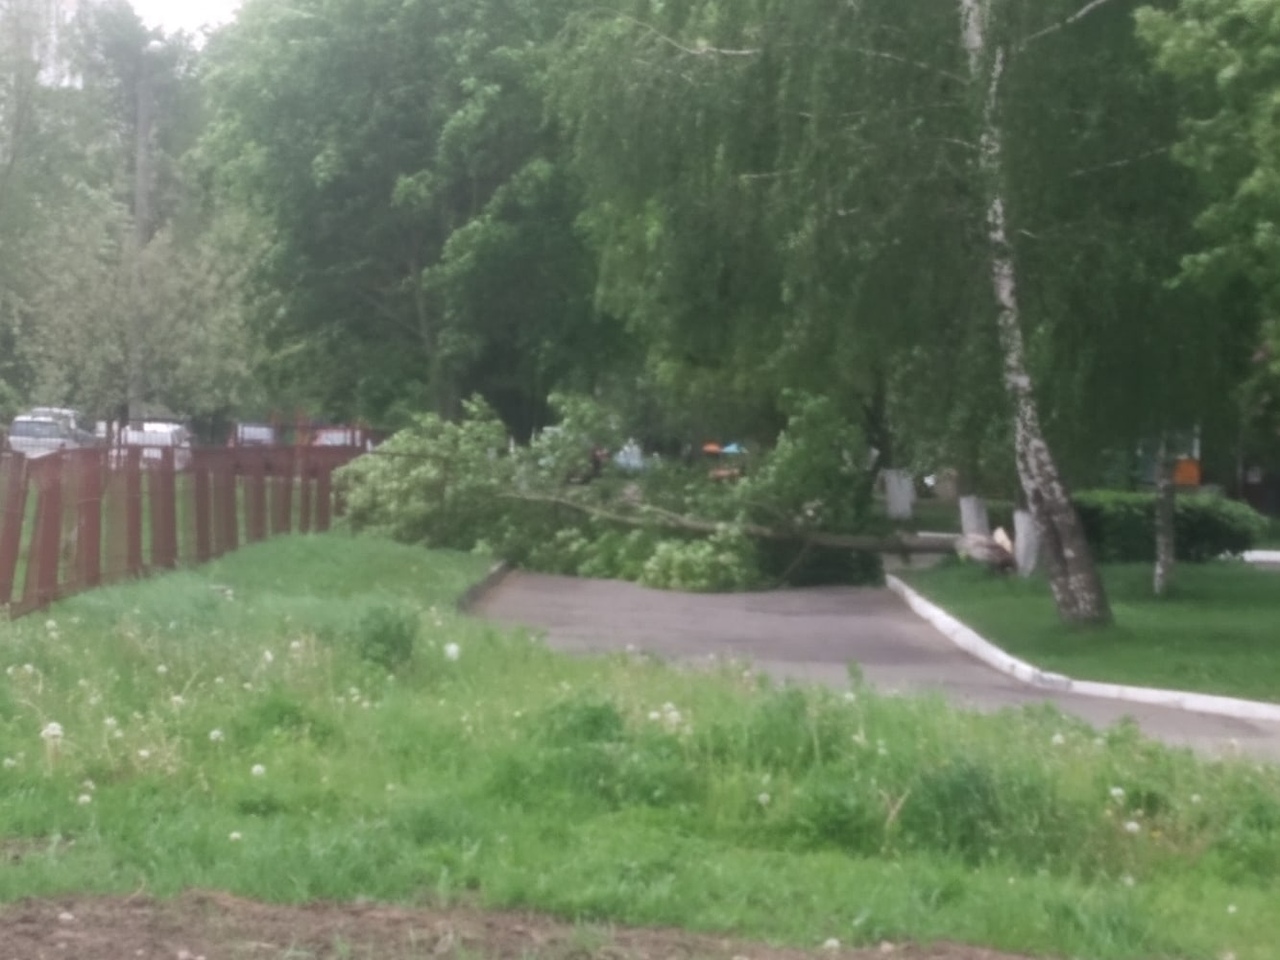 Вчера ветер валил деревья и срывал вывески в Витебске — фото